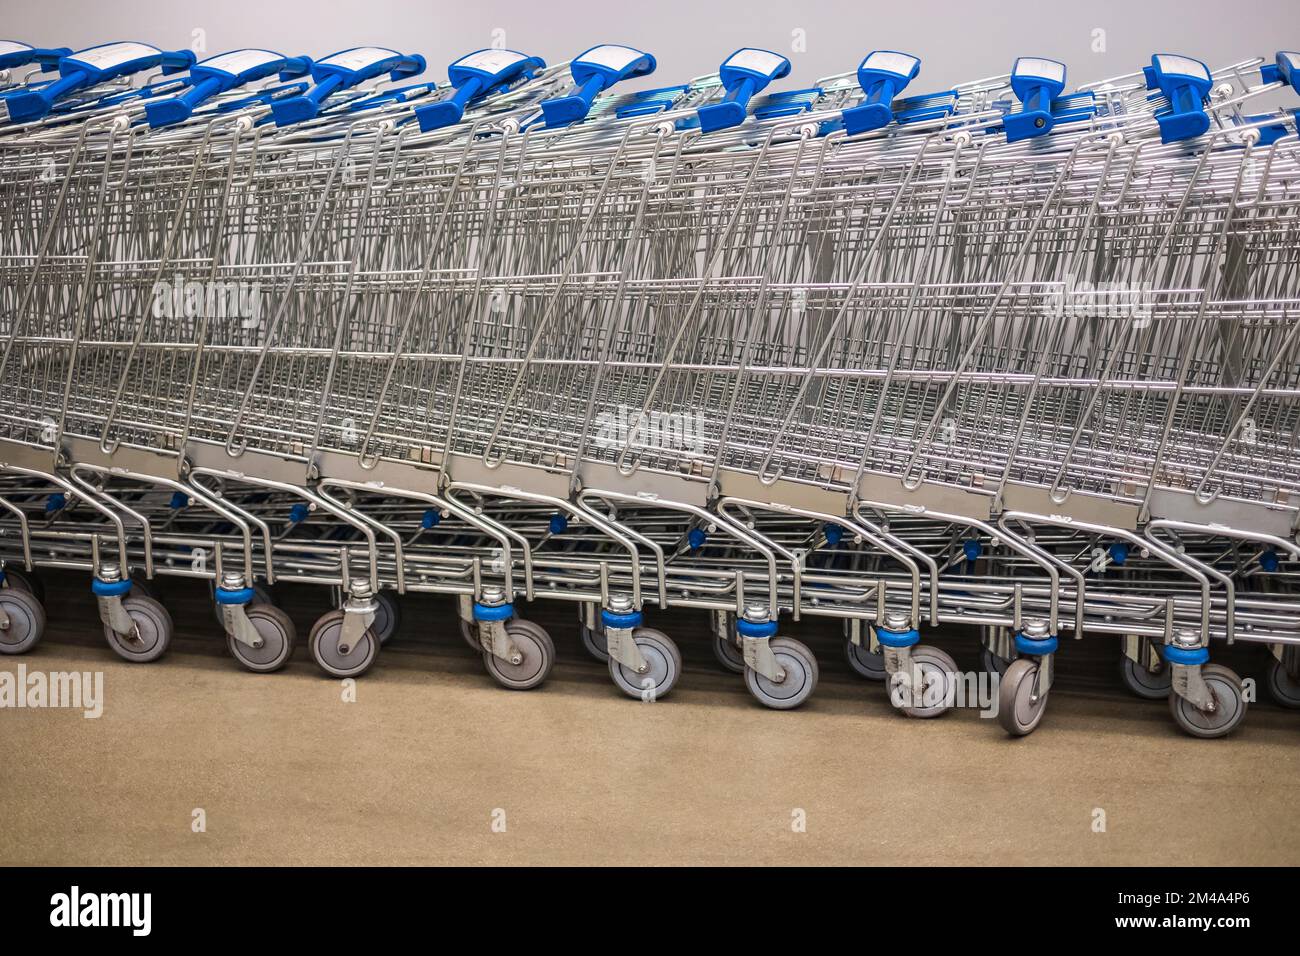 Eine Reihe gestapelter Supermarkt-Trolleys. Eine Reihe gestapelter Metallwagen für Supermärkte ist in der Perspektive zu sehen. Große Gruppe von Einkaufswagen in r Stockfoto